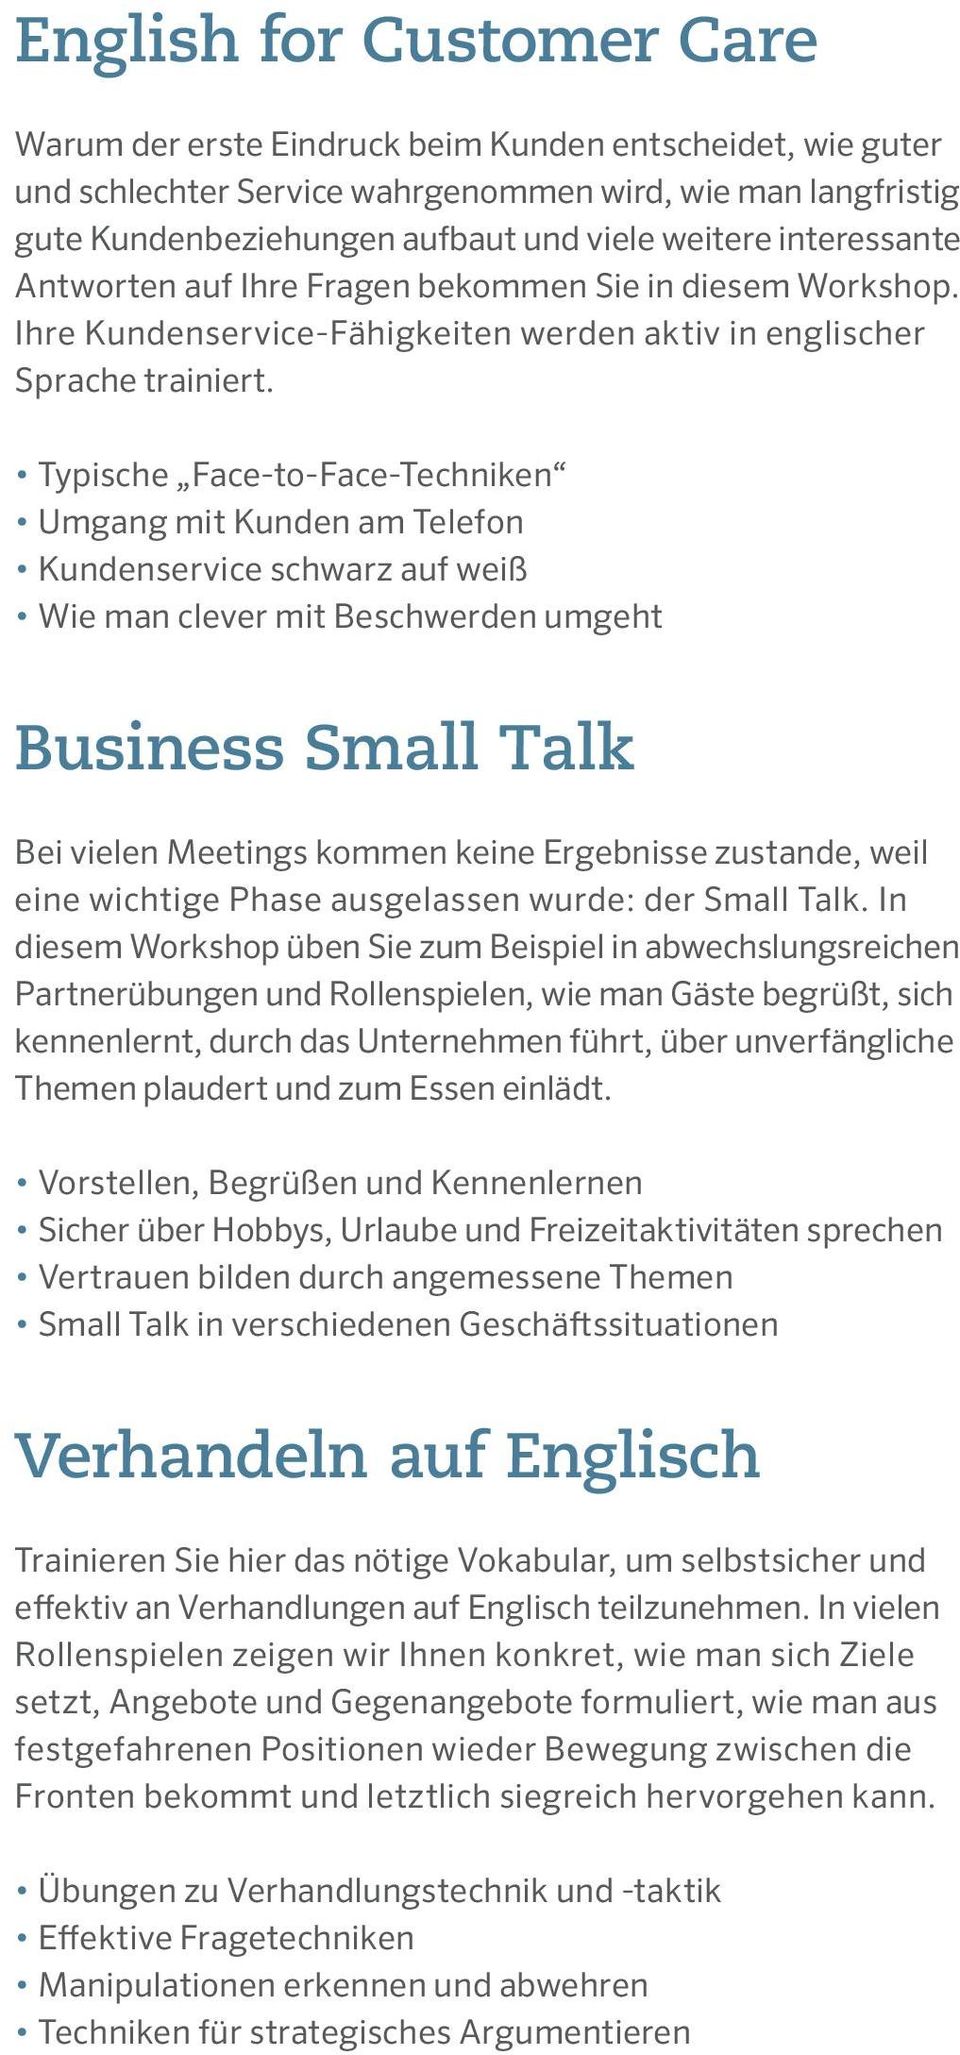 freuen uns auf ein Kennenlernen - Englisch Übersetzung - Deutsch Beispiele | Reverso Context